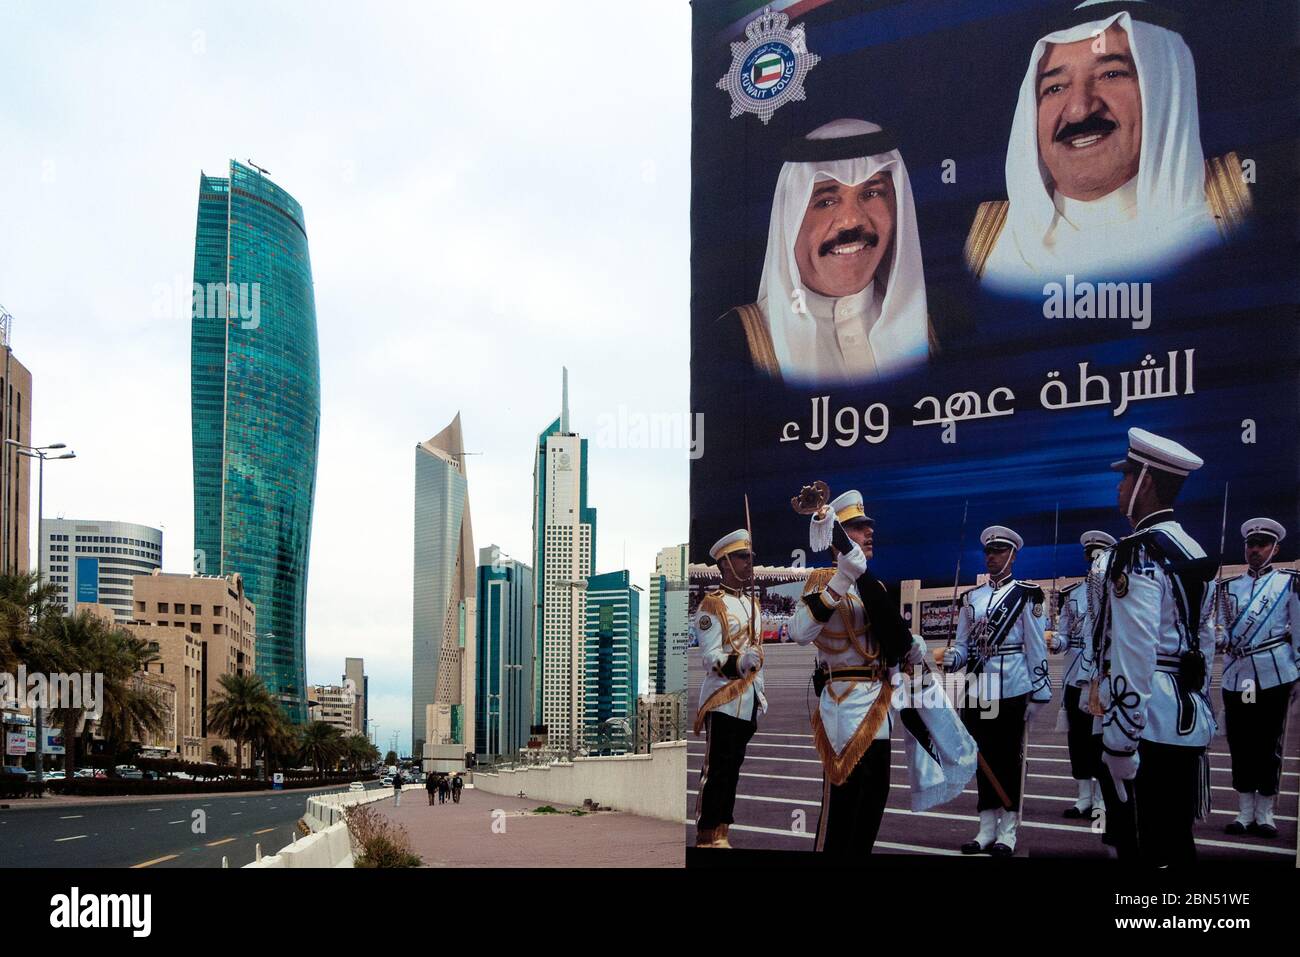 Koweït, Koweït: Panneau public du prince héritier Sheikh Nawaf Al Ahmed Al Jaber Al Sabah (à gauche) et du cheik Sabah Al Ahmad Al Jaber Al Sabah (à droite) Banque D'Images